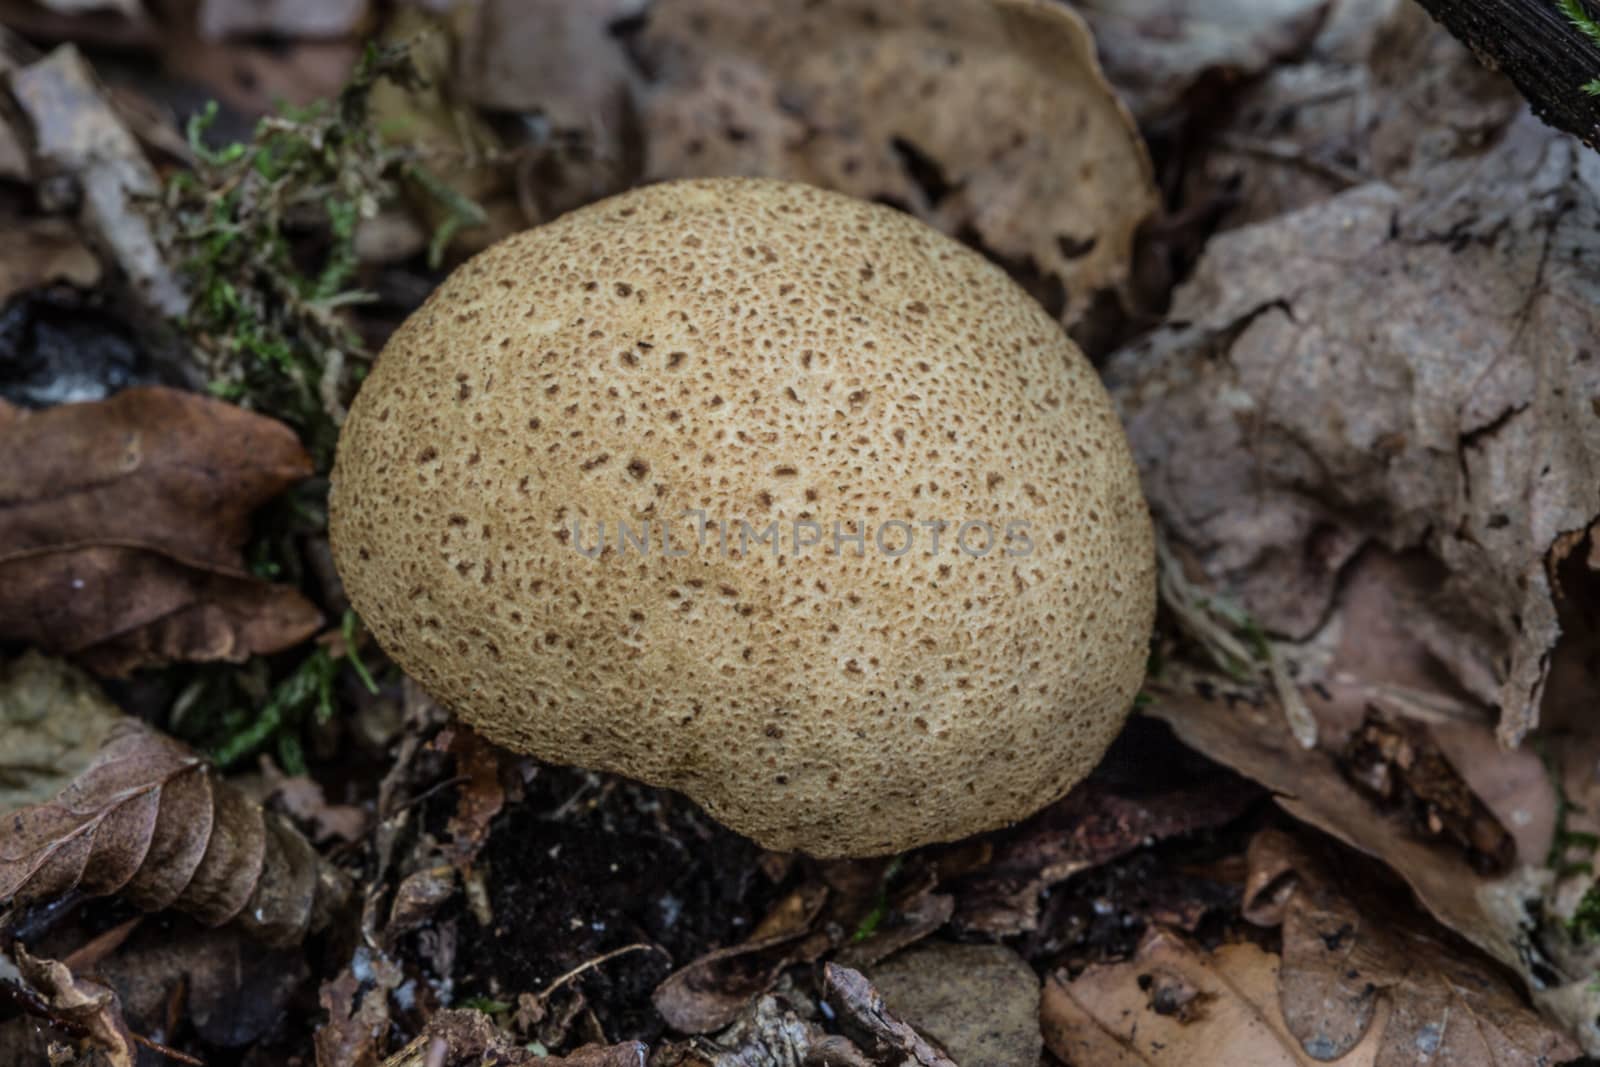 tasty edible mushroom on forest floor